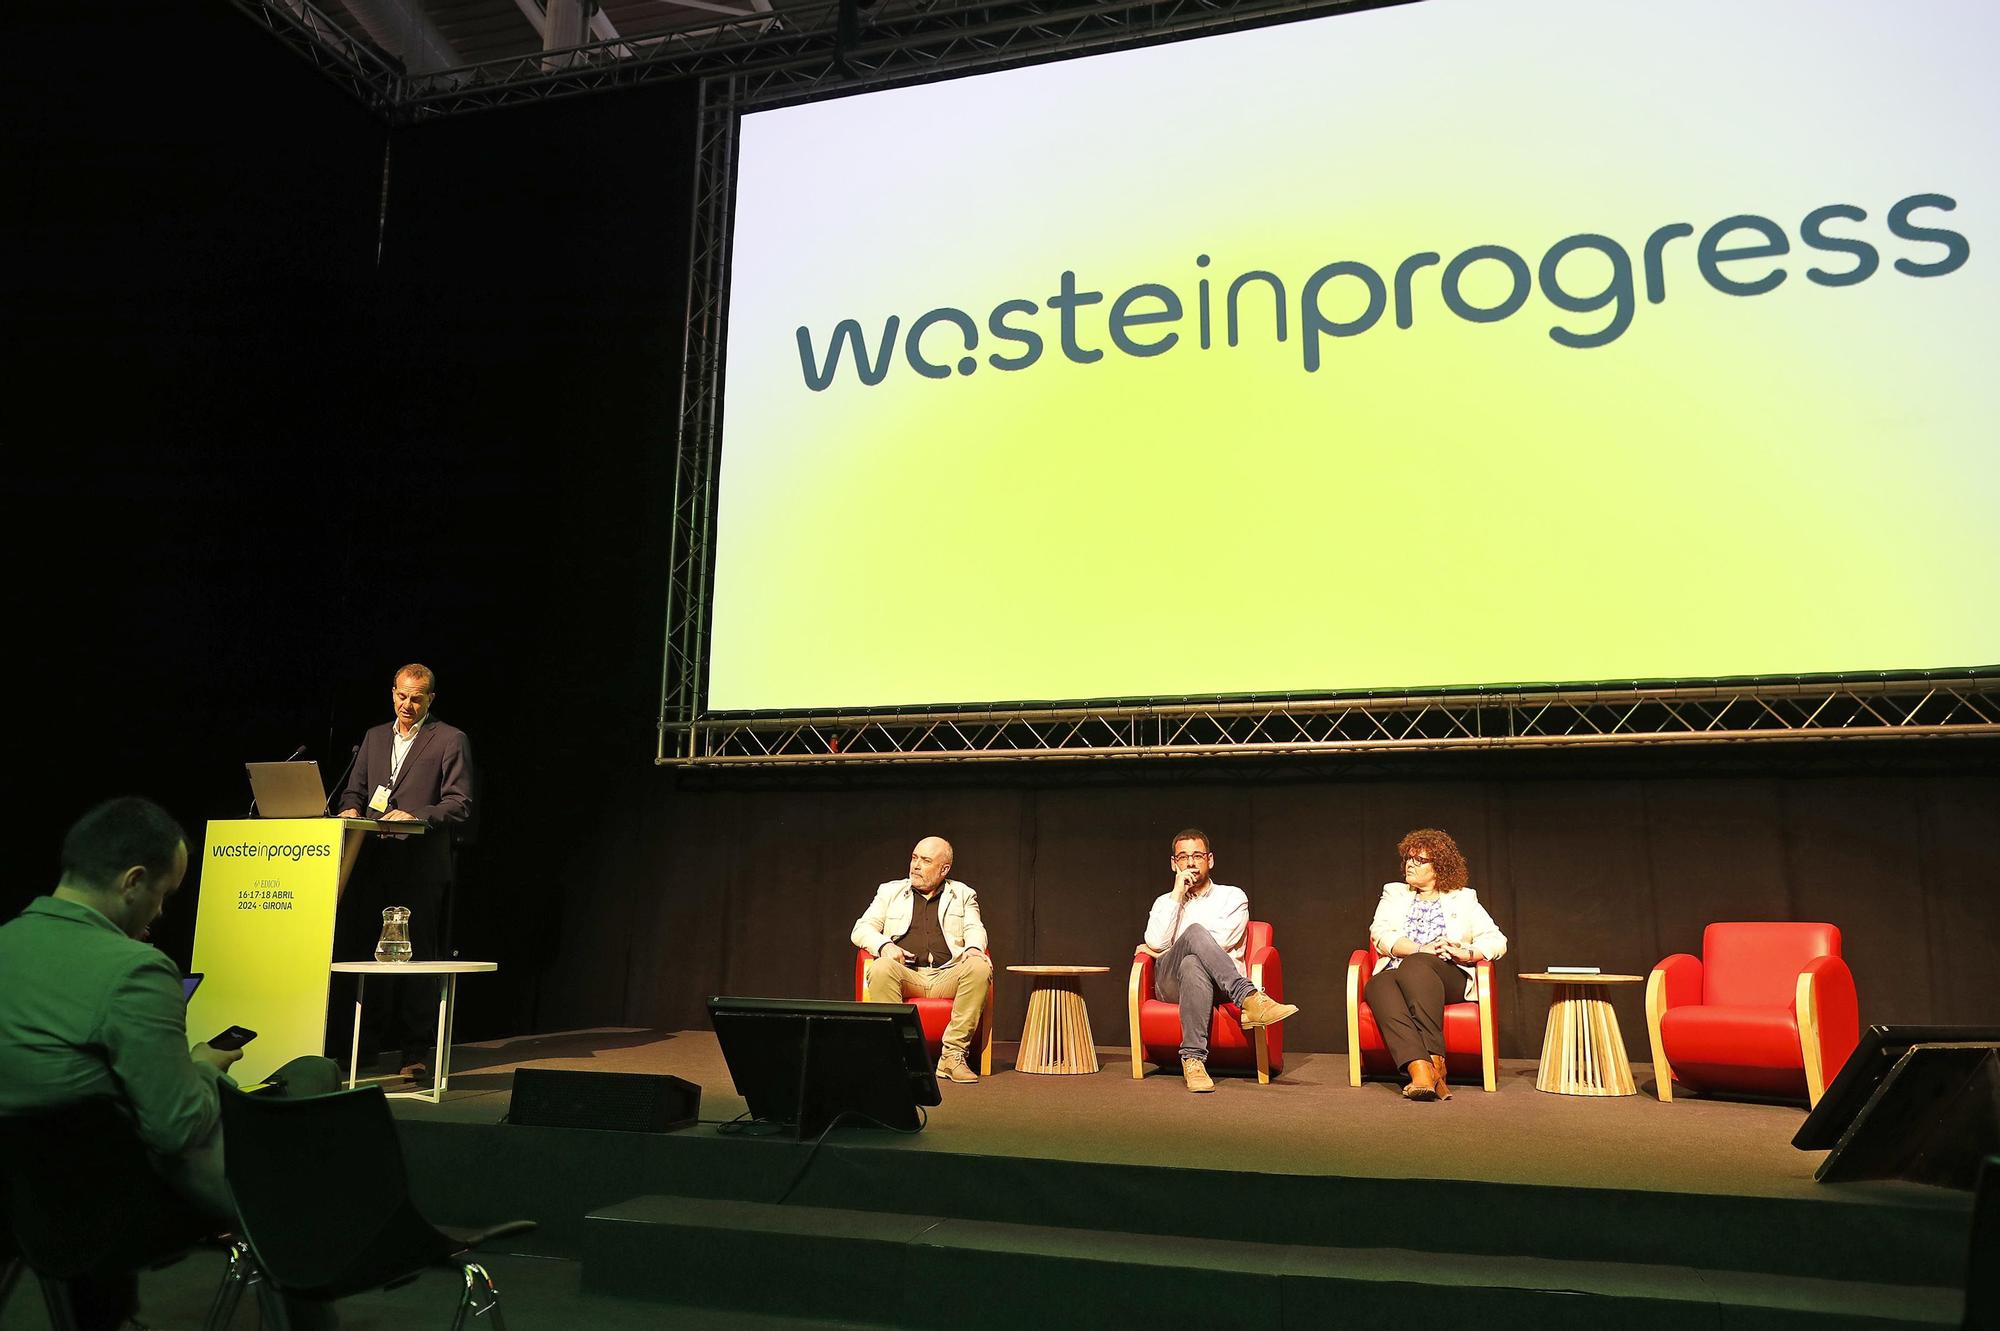 Les millors imatges del #wasteinprogress